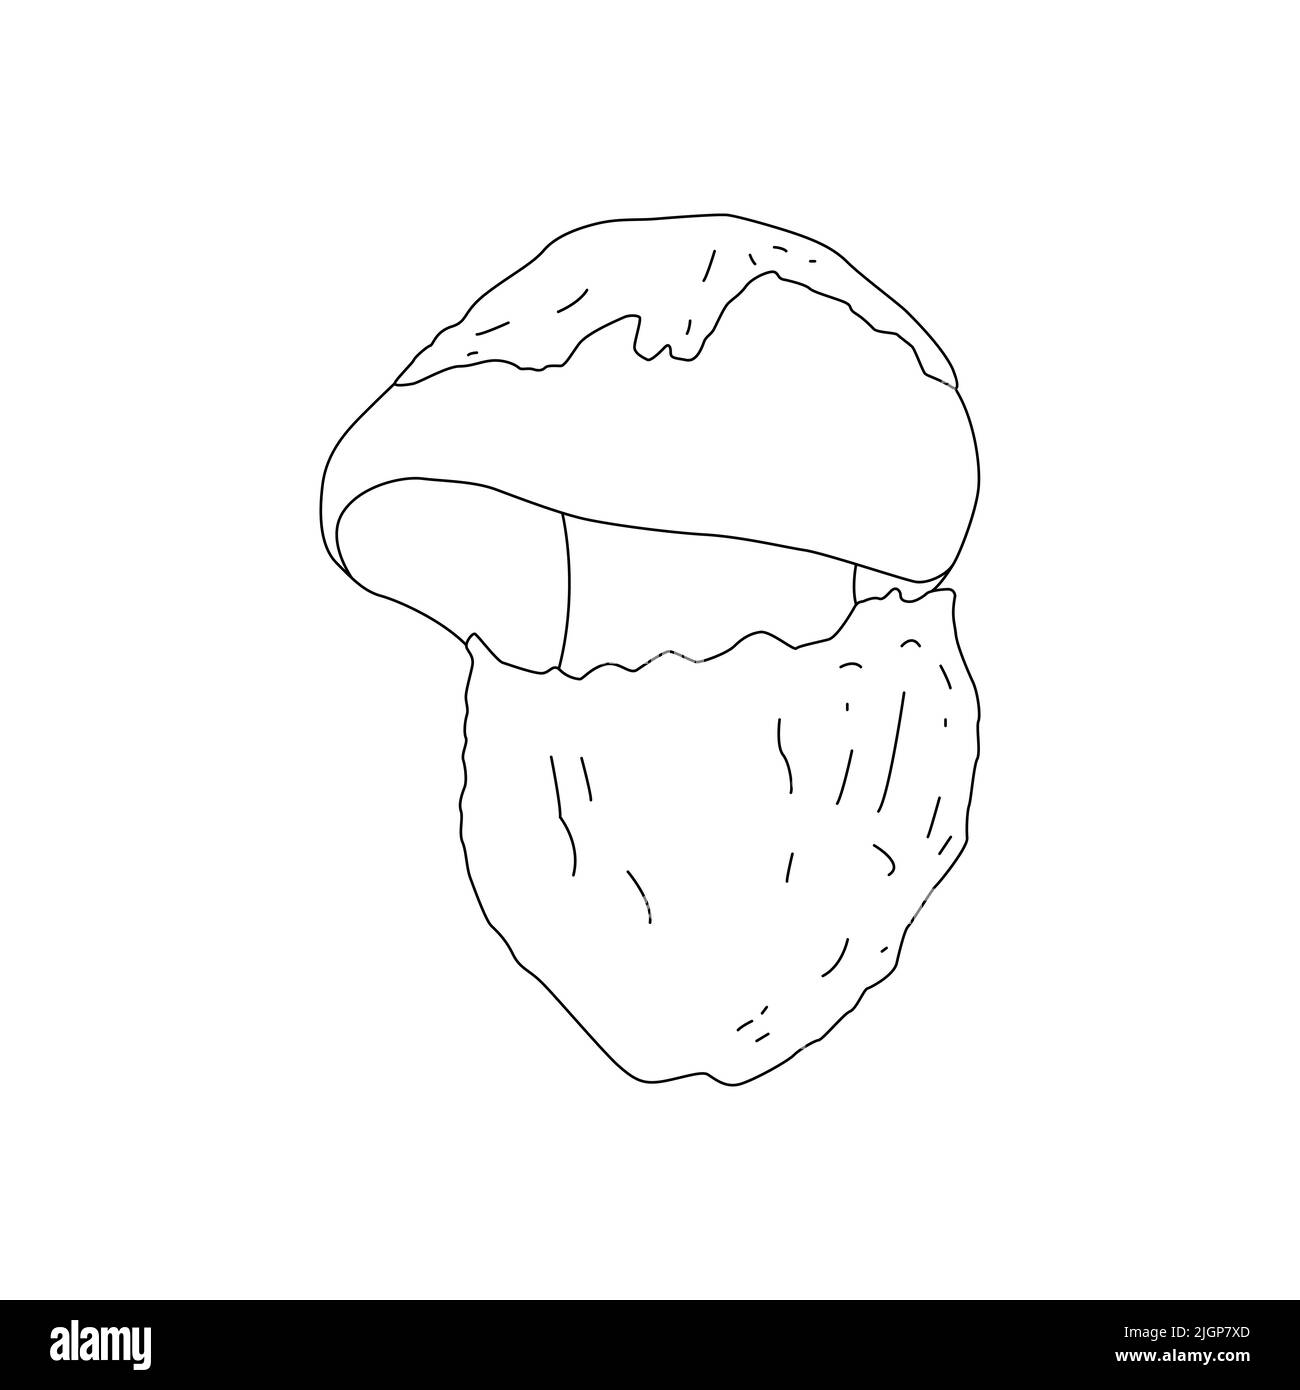 Mushroom Line Art Logo various Mushrooms hand drawn sketch. Stock Vector